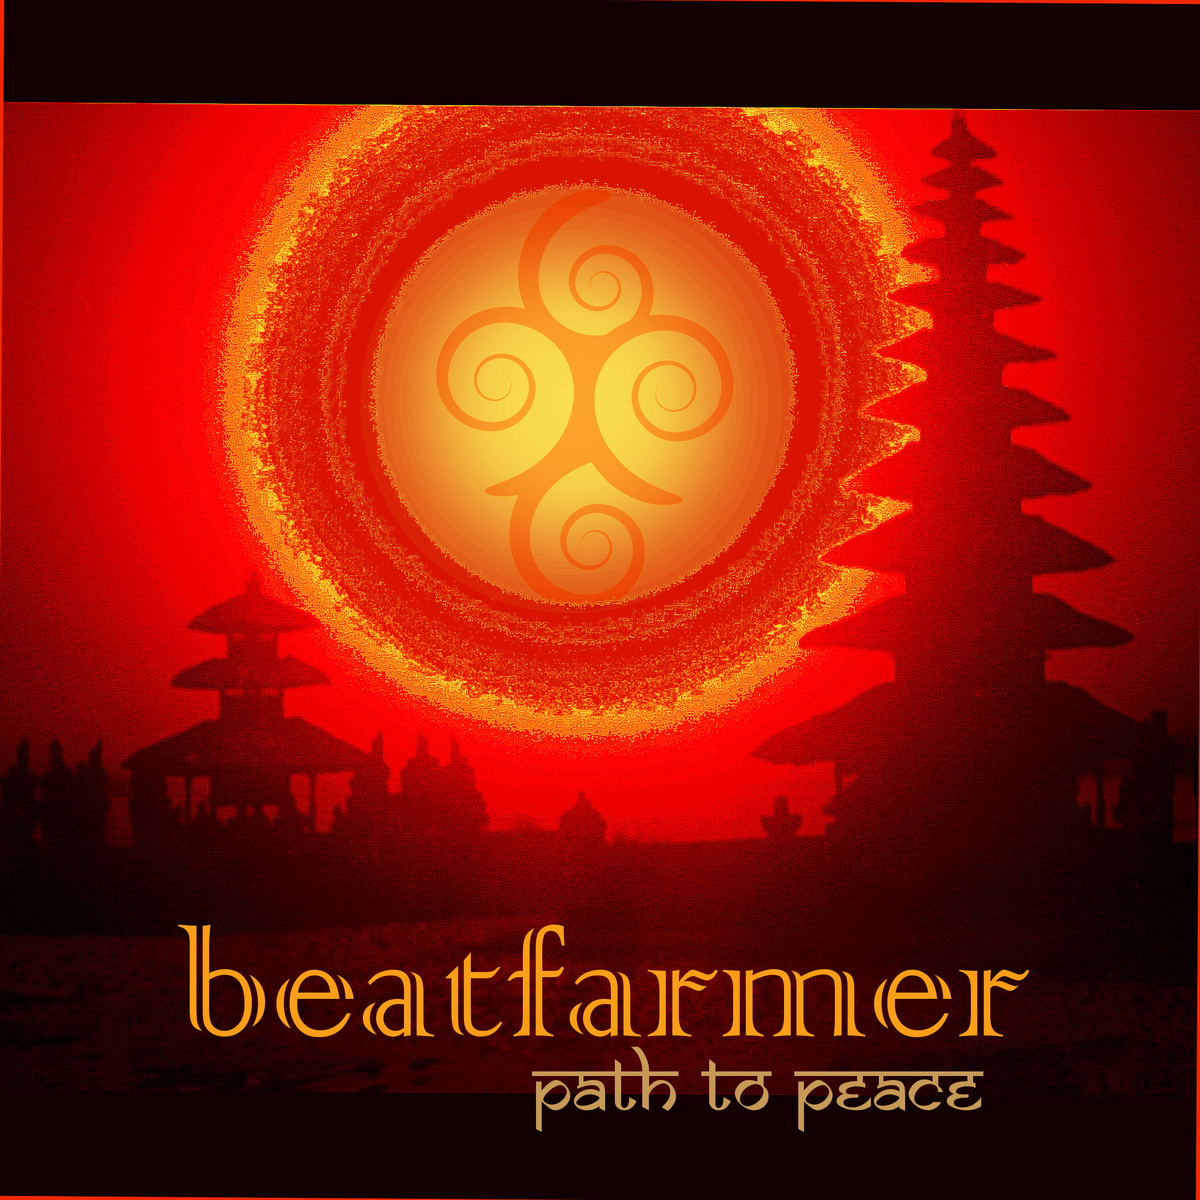 Preuzimanje datoteka Beatfarmer - Path to Peace (live edit)